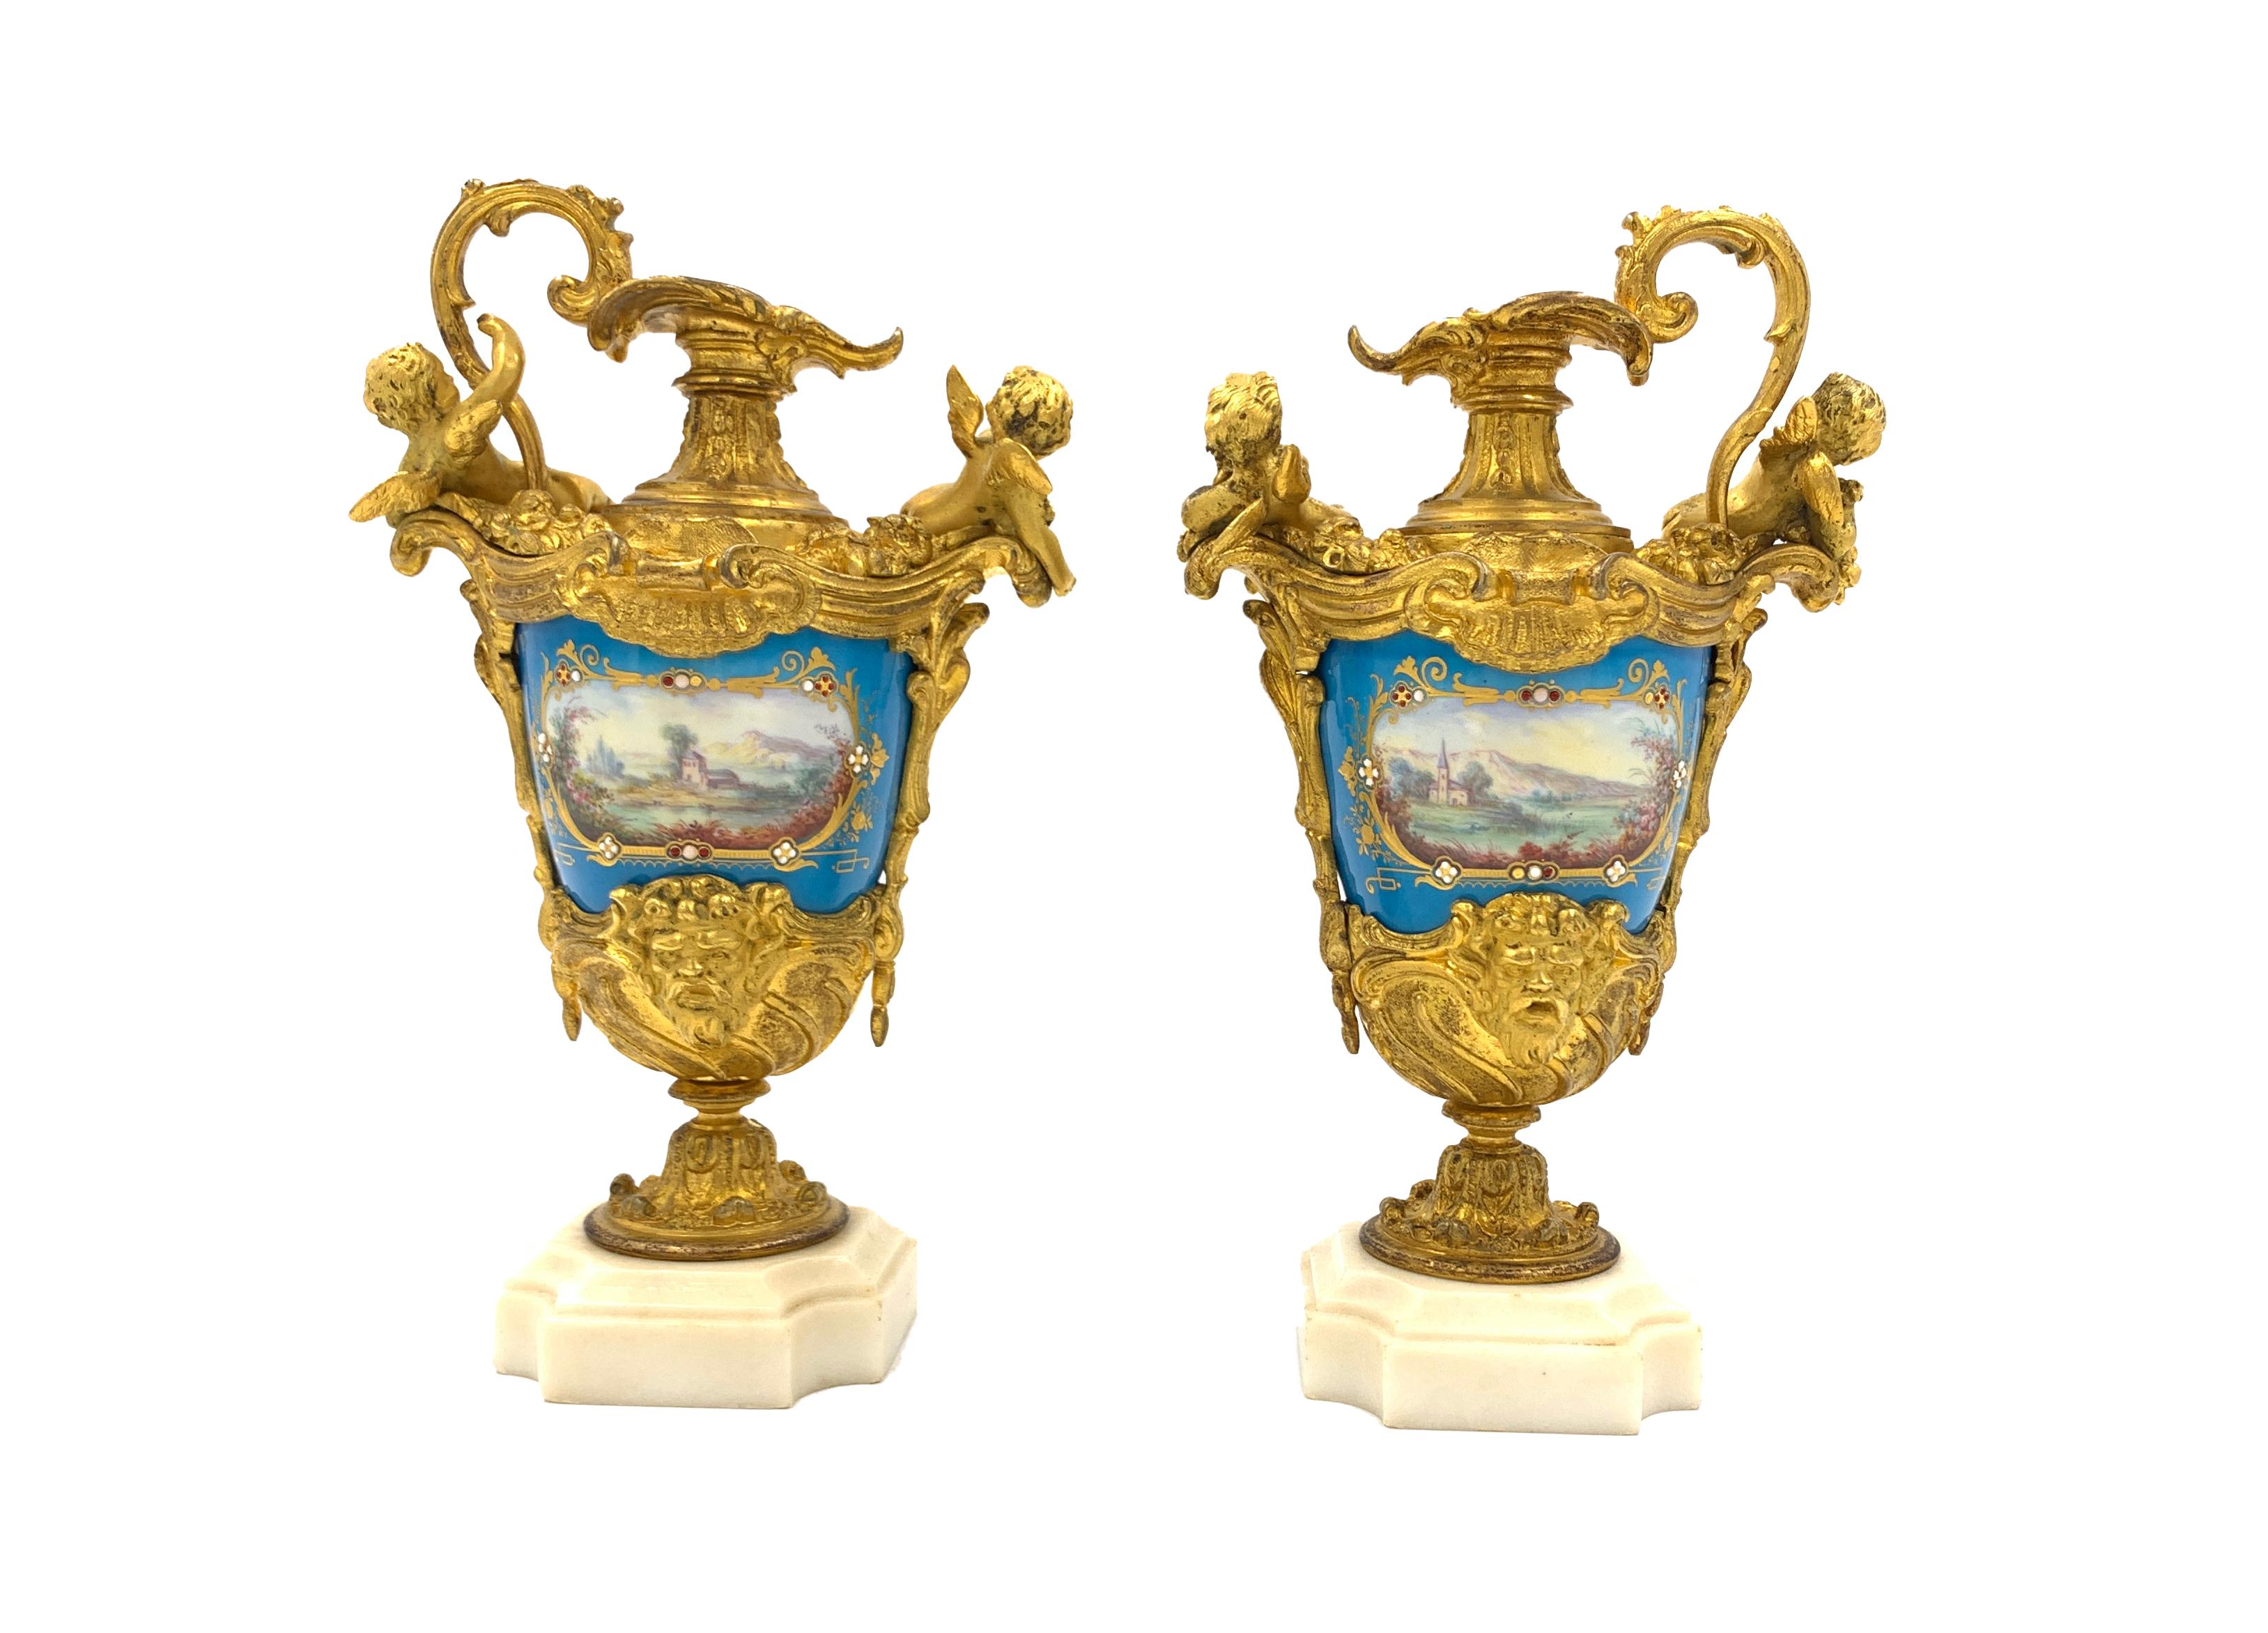 Paire de vases à aiguière de style Sèvres du XIXe siècle en porcelaine et métal doré, décorés d'angelots et de scènes continentales romantiques, sur des bases en marbre blanc.
 